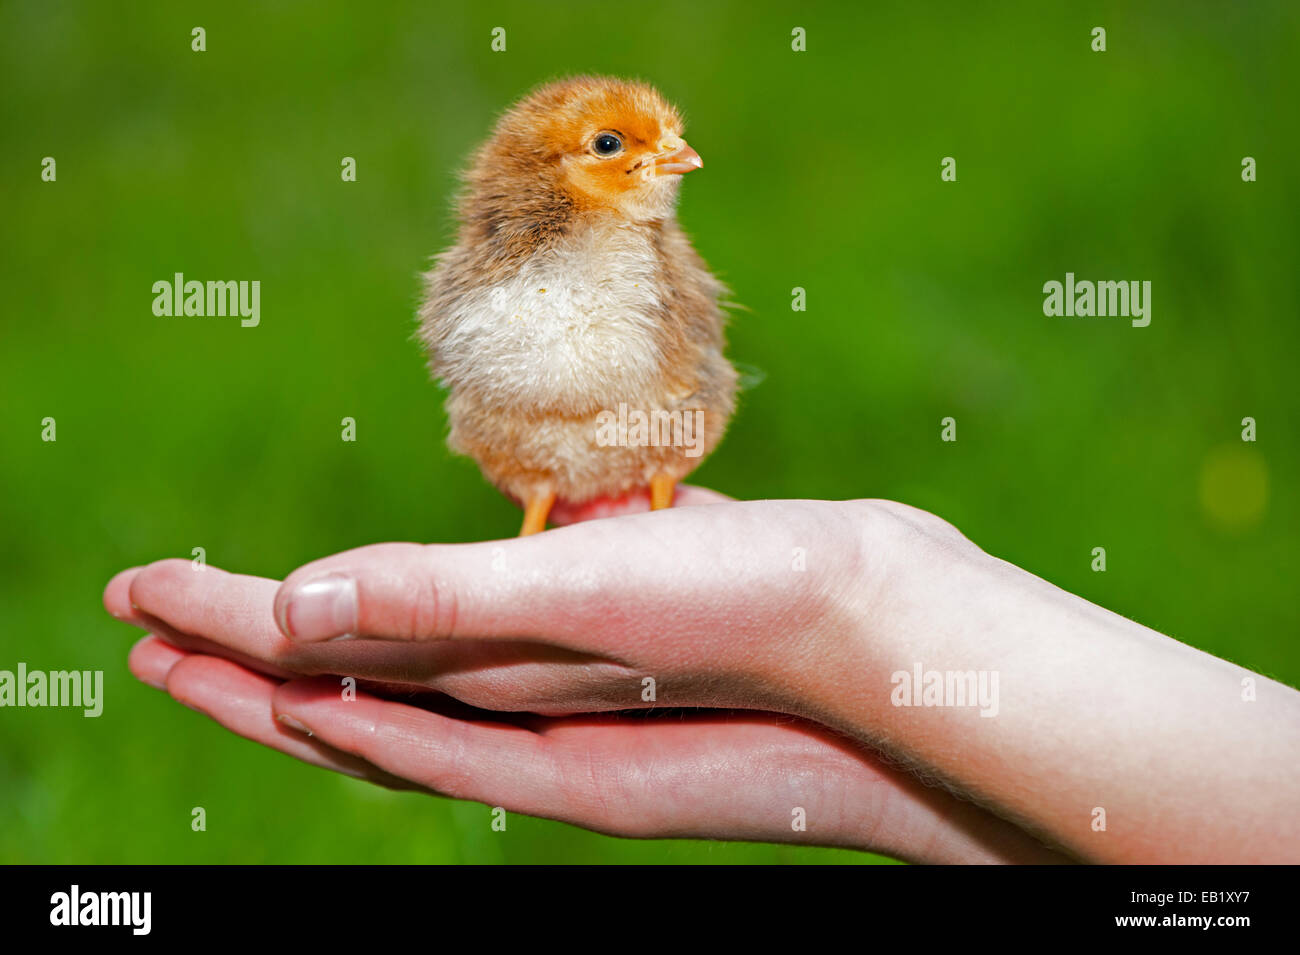 Día de antigüedad aves chick childs, recluido en una mano. Foto de stock